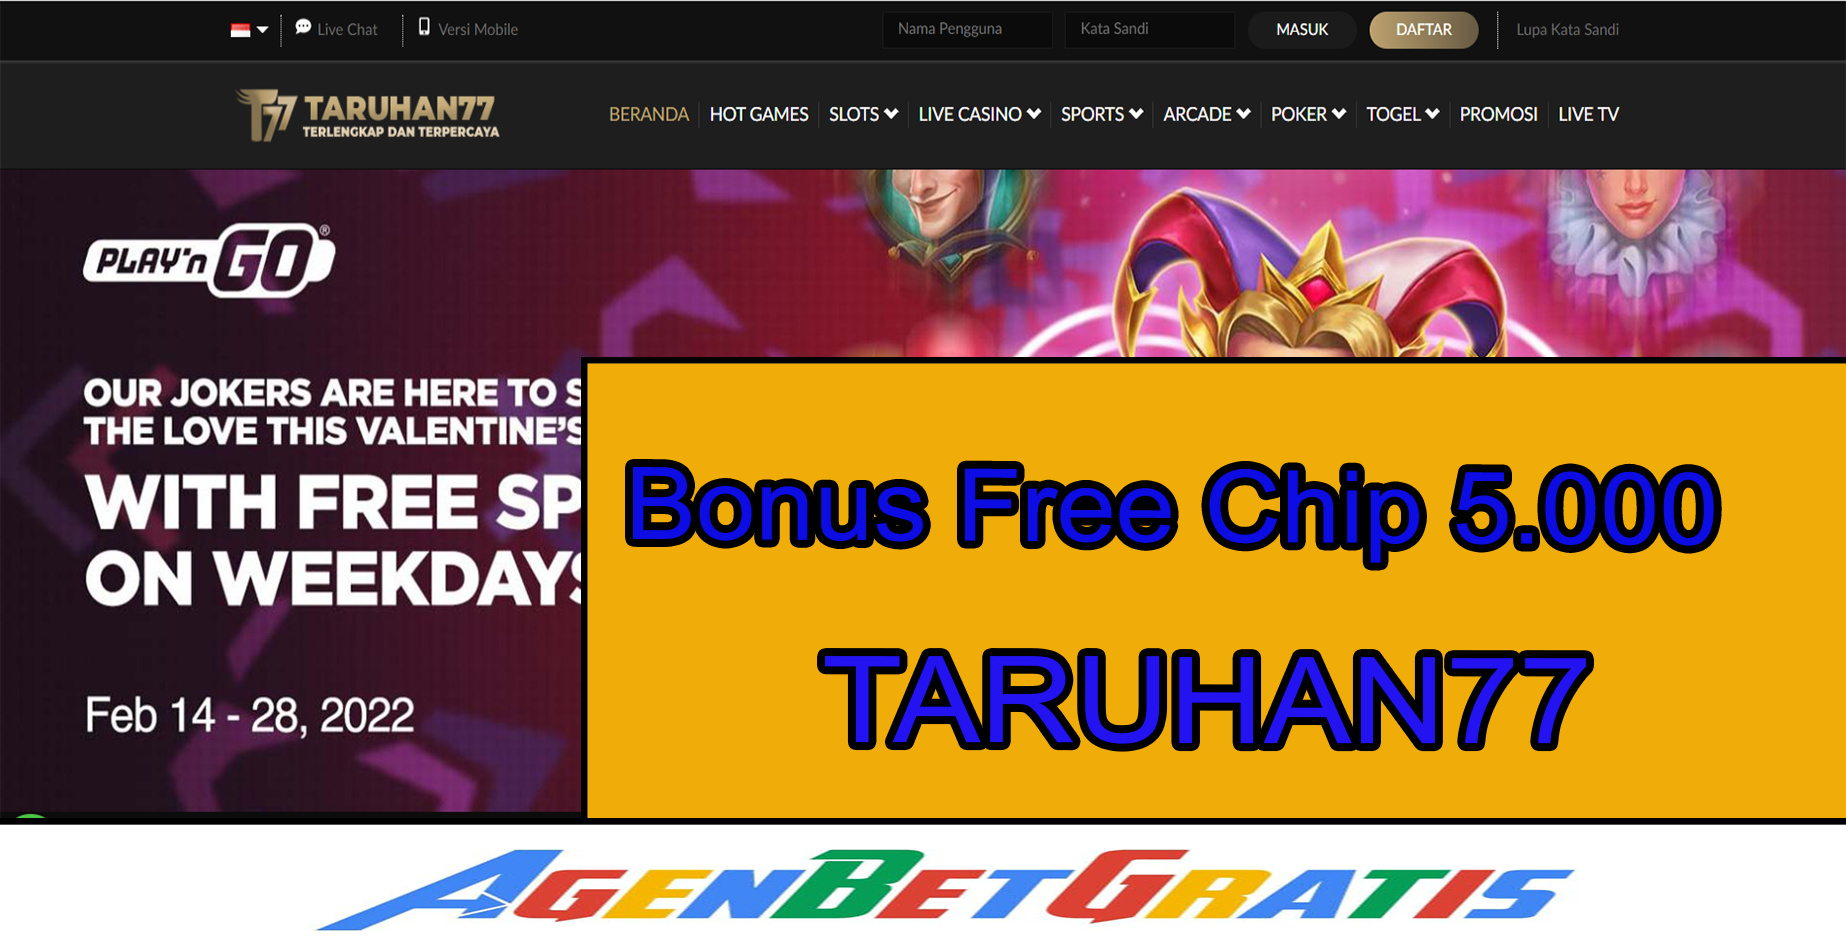 TARUHAN77 - Bonus FreeChip 5.000